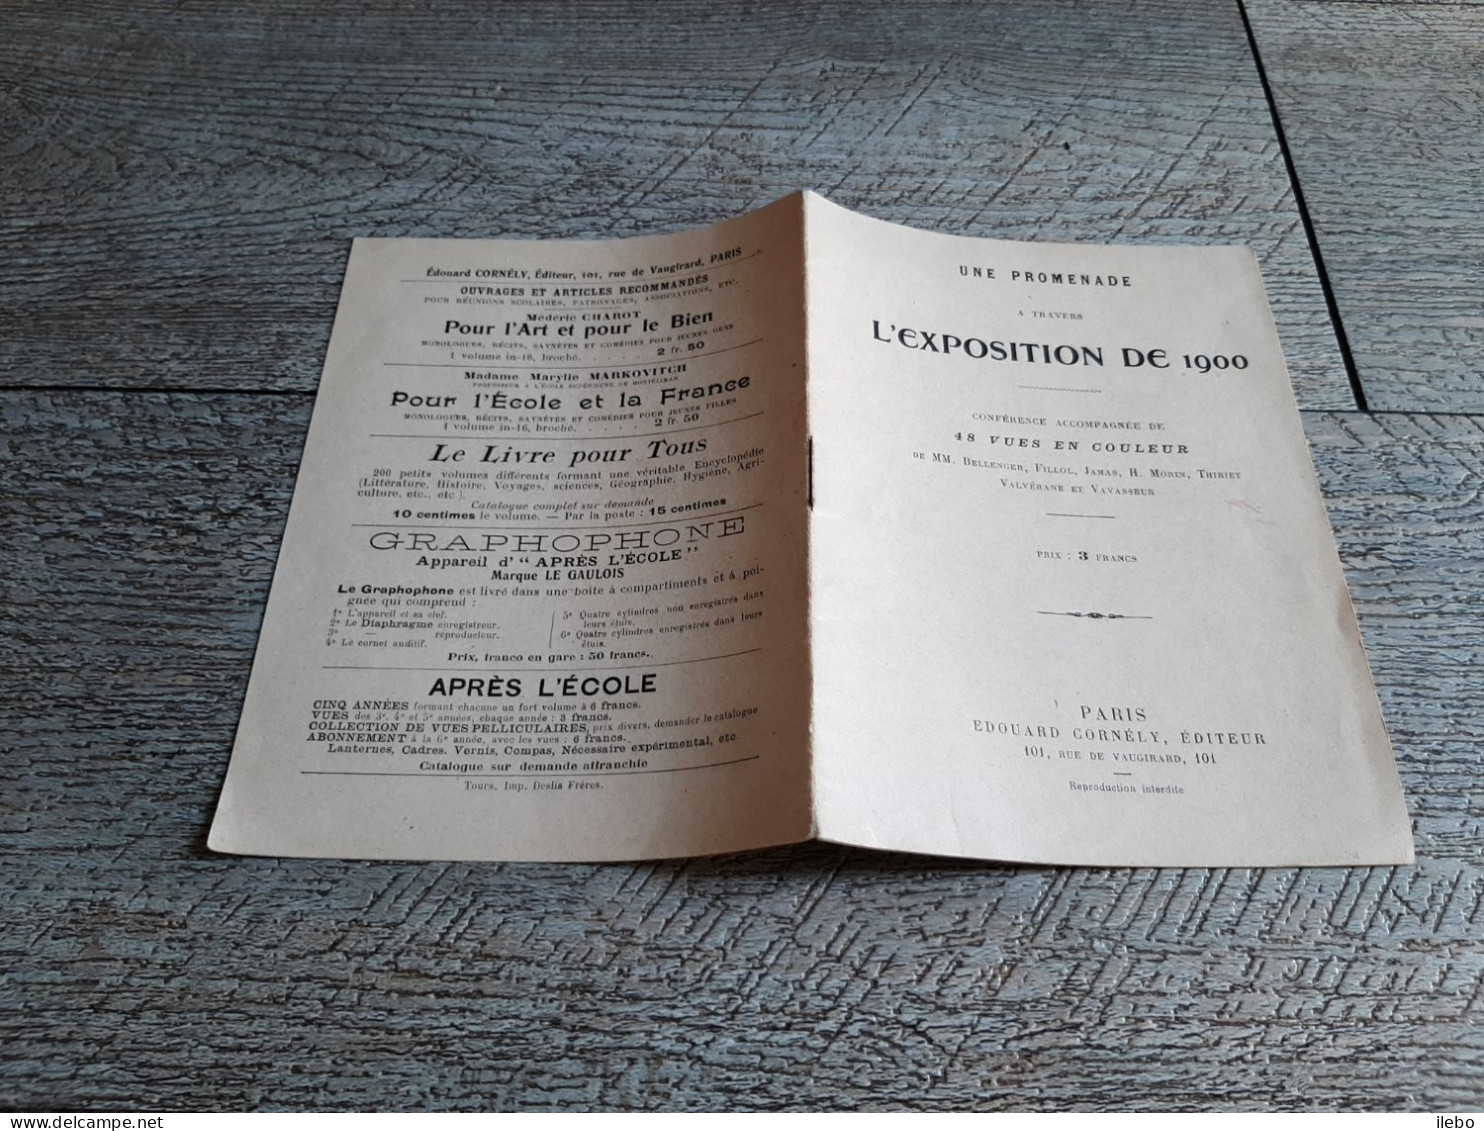 Petite Brochure Une Promenade à Travers L'exposition De 1900 Conférence Accompagnée De 48 Vues Paris - Parijs